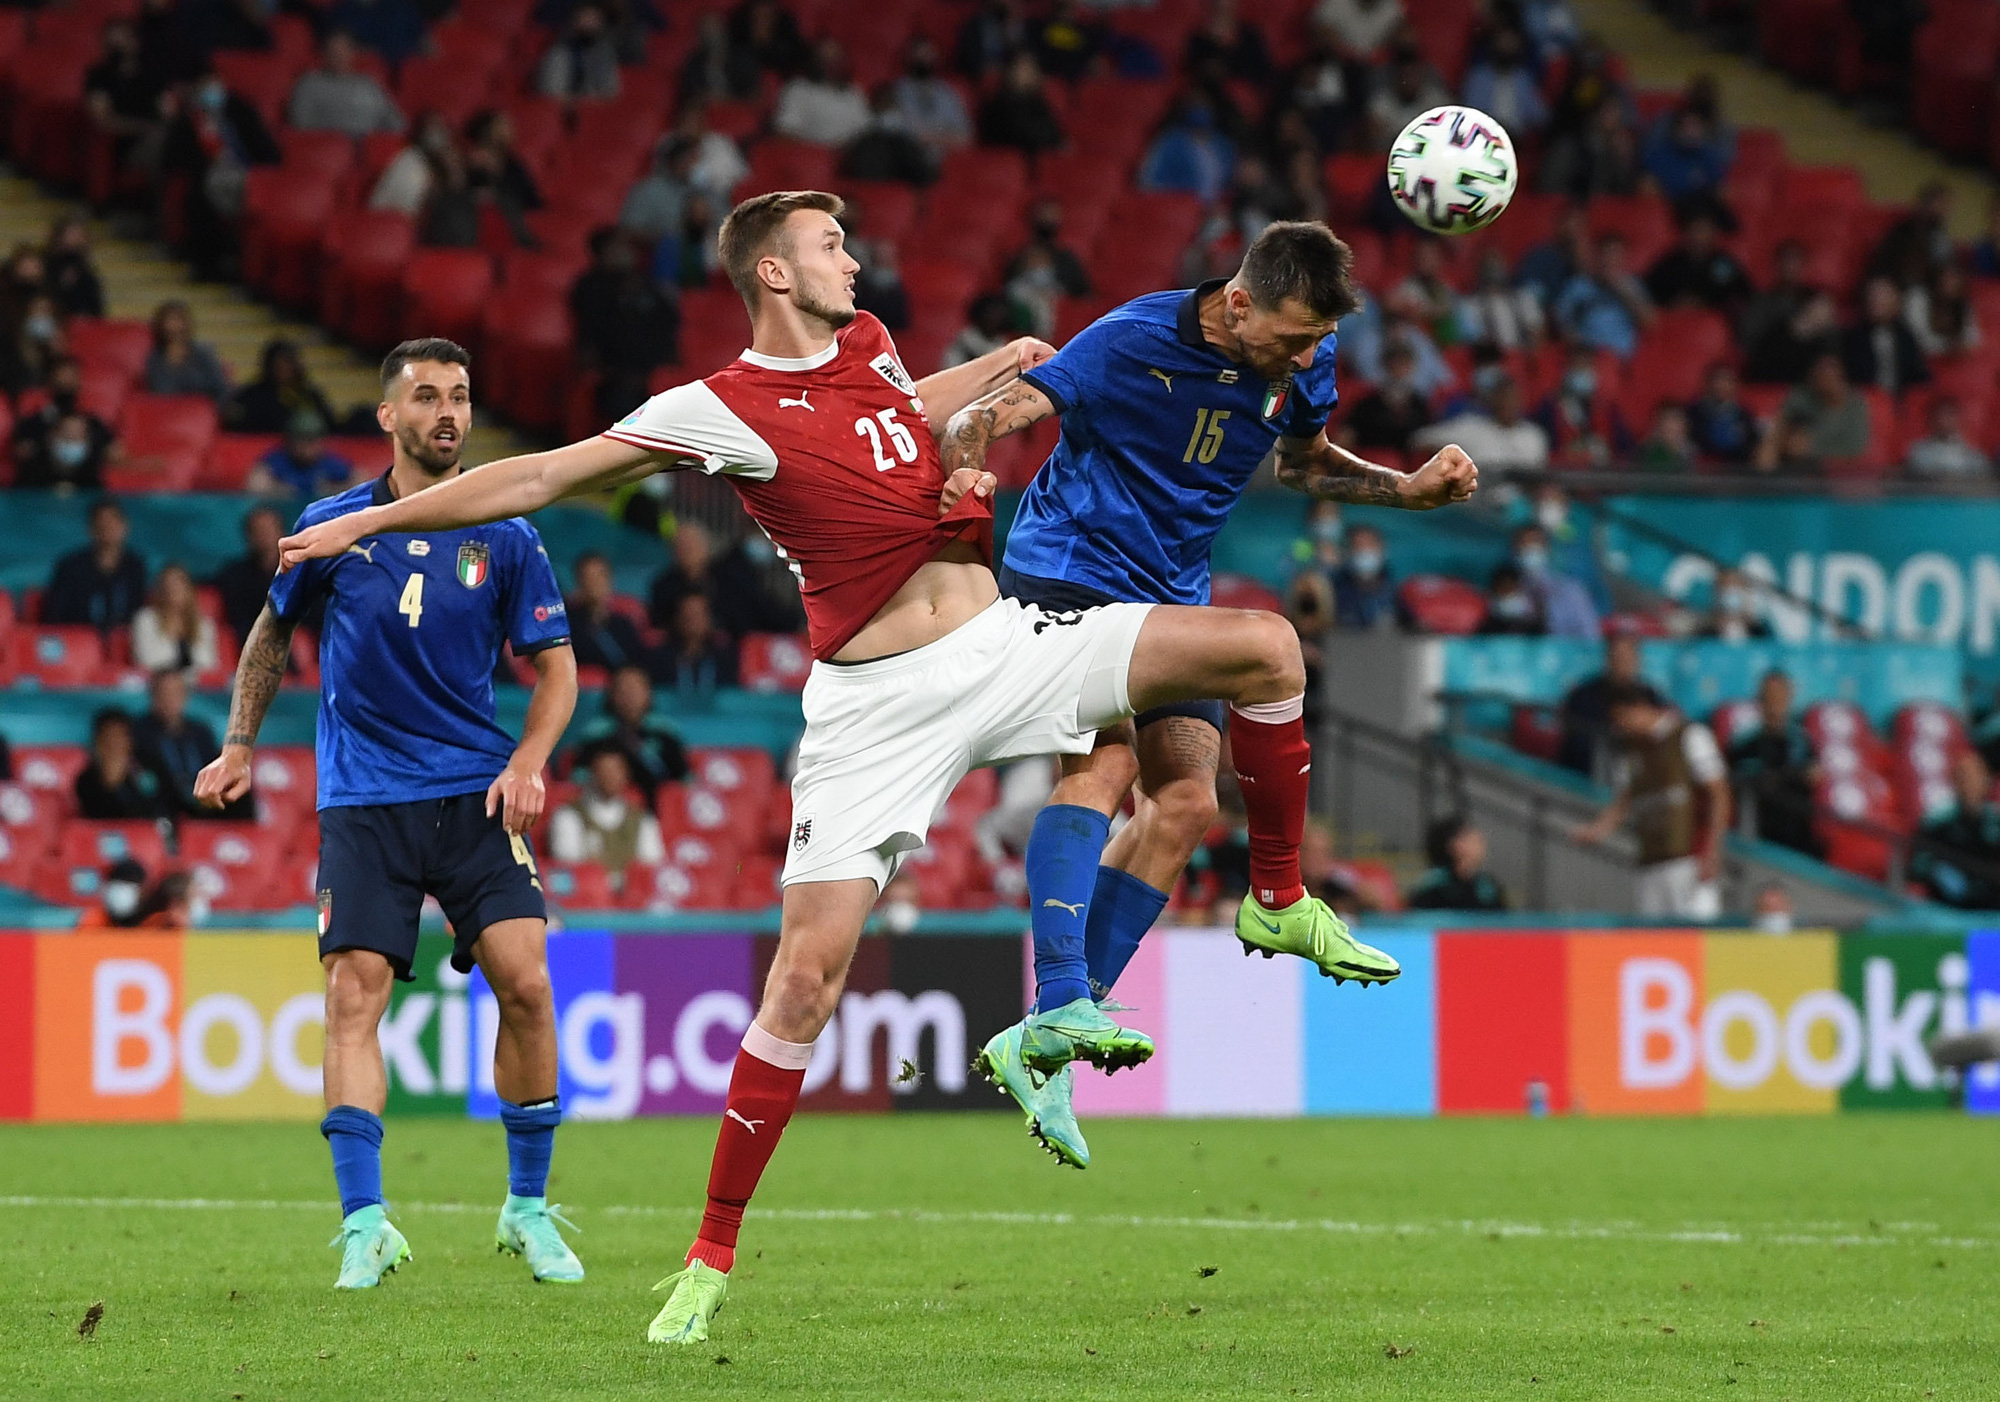 Tuyển Ý vào tứ kết Euro 2020 nhờ hai siêu phẩm bàn thắng - Ảnh 3.